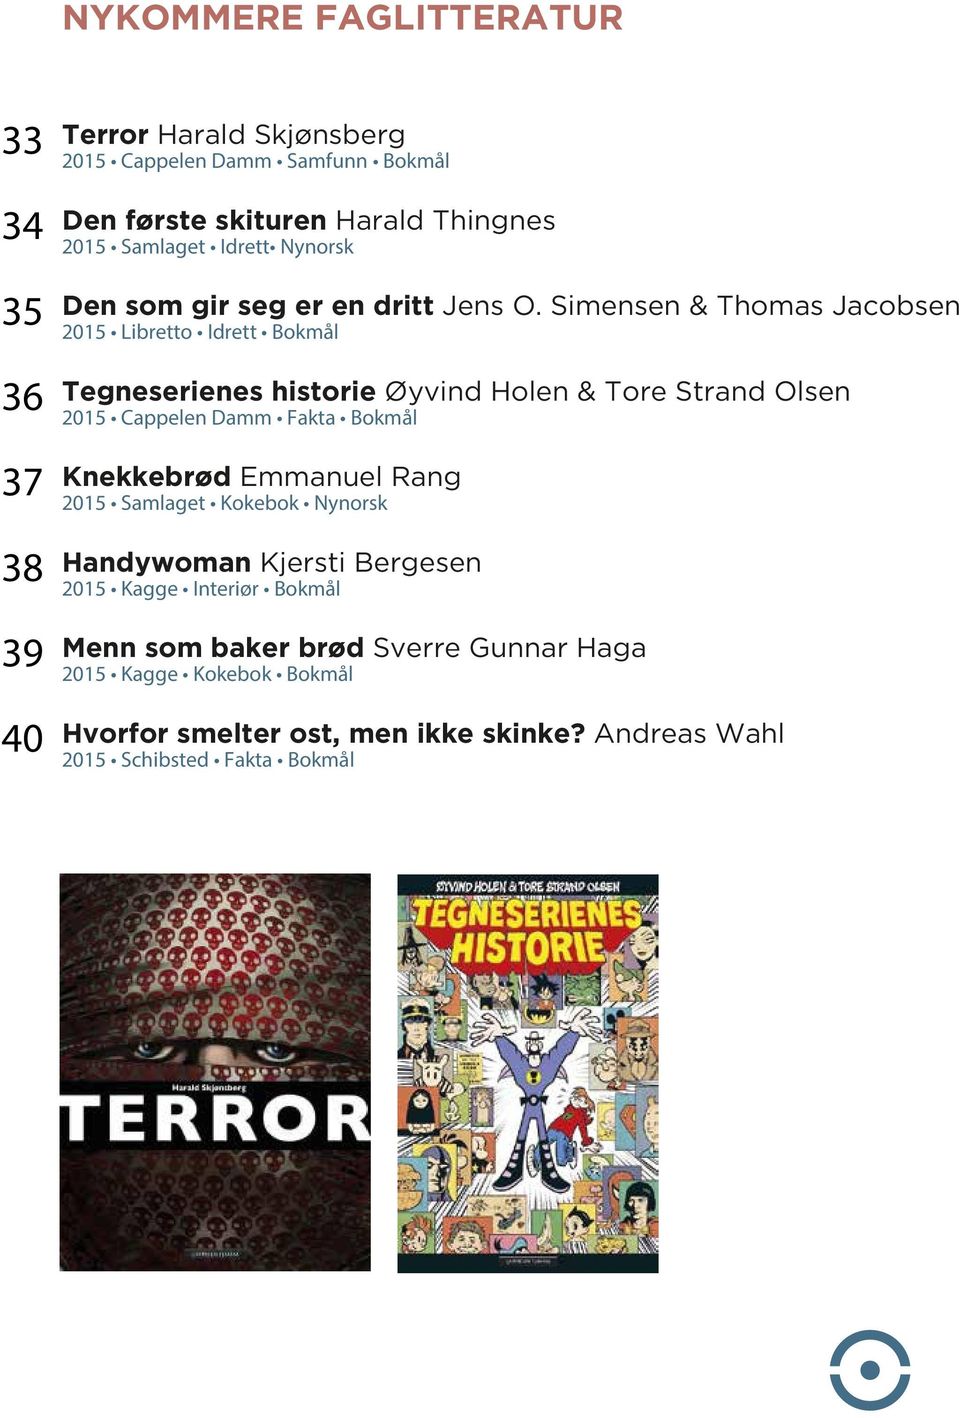 Simensen & Thomas Jacobsen 2015 Libretto Idrett Bokmål Tegneserienes historie Øyvind Holen & Tore Strand Olsen 2015 Cappelen Damm Fakta Bokmål